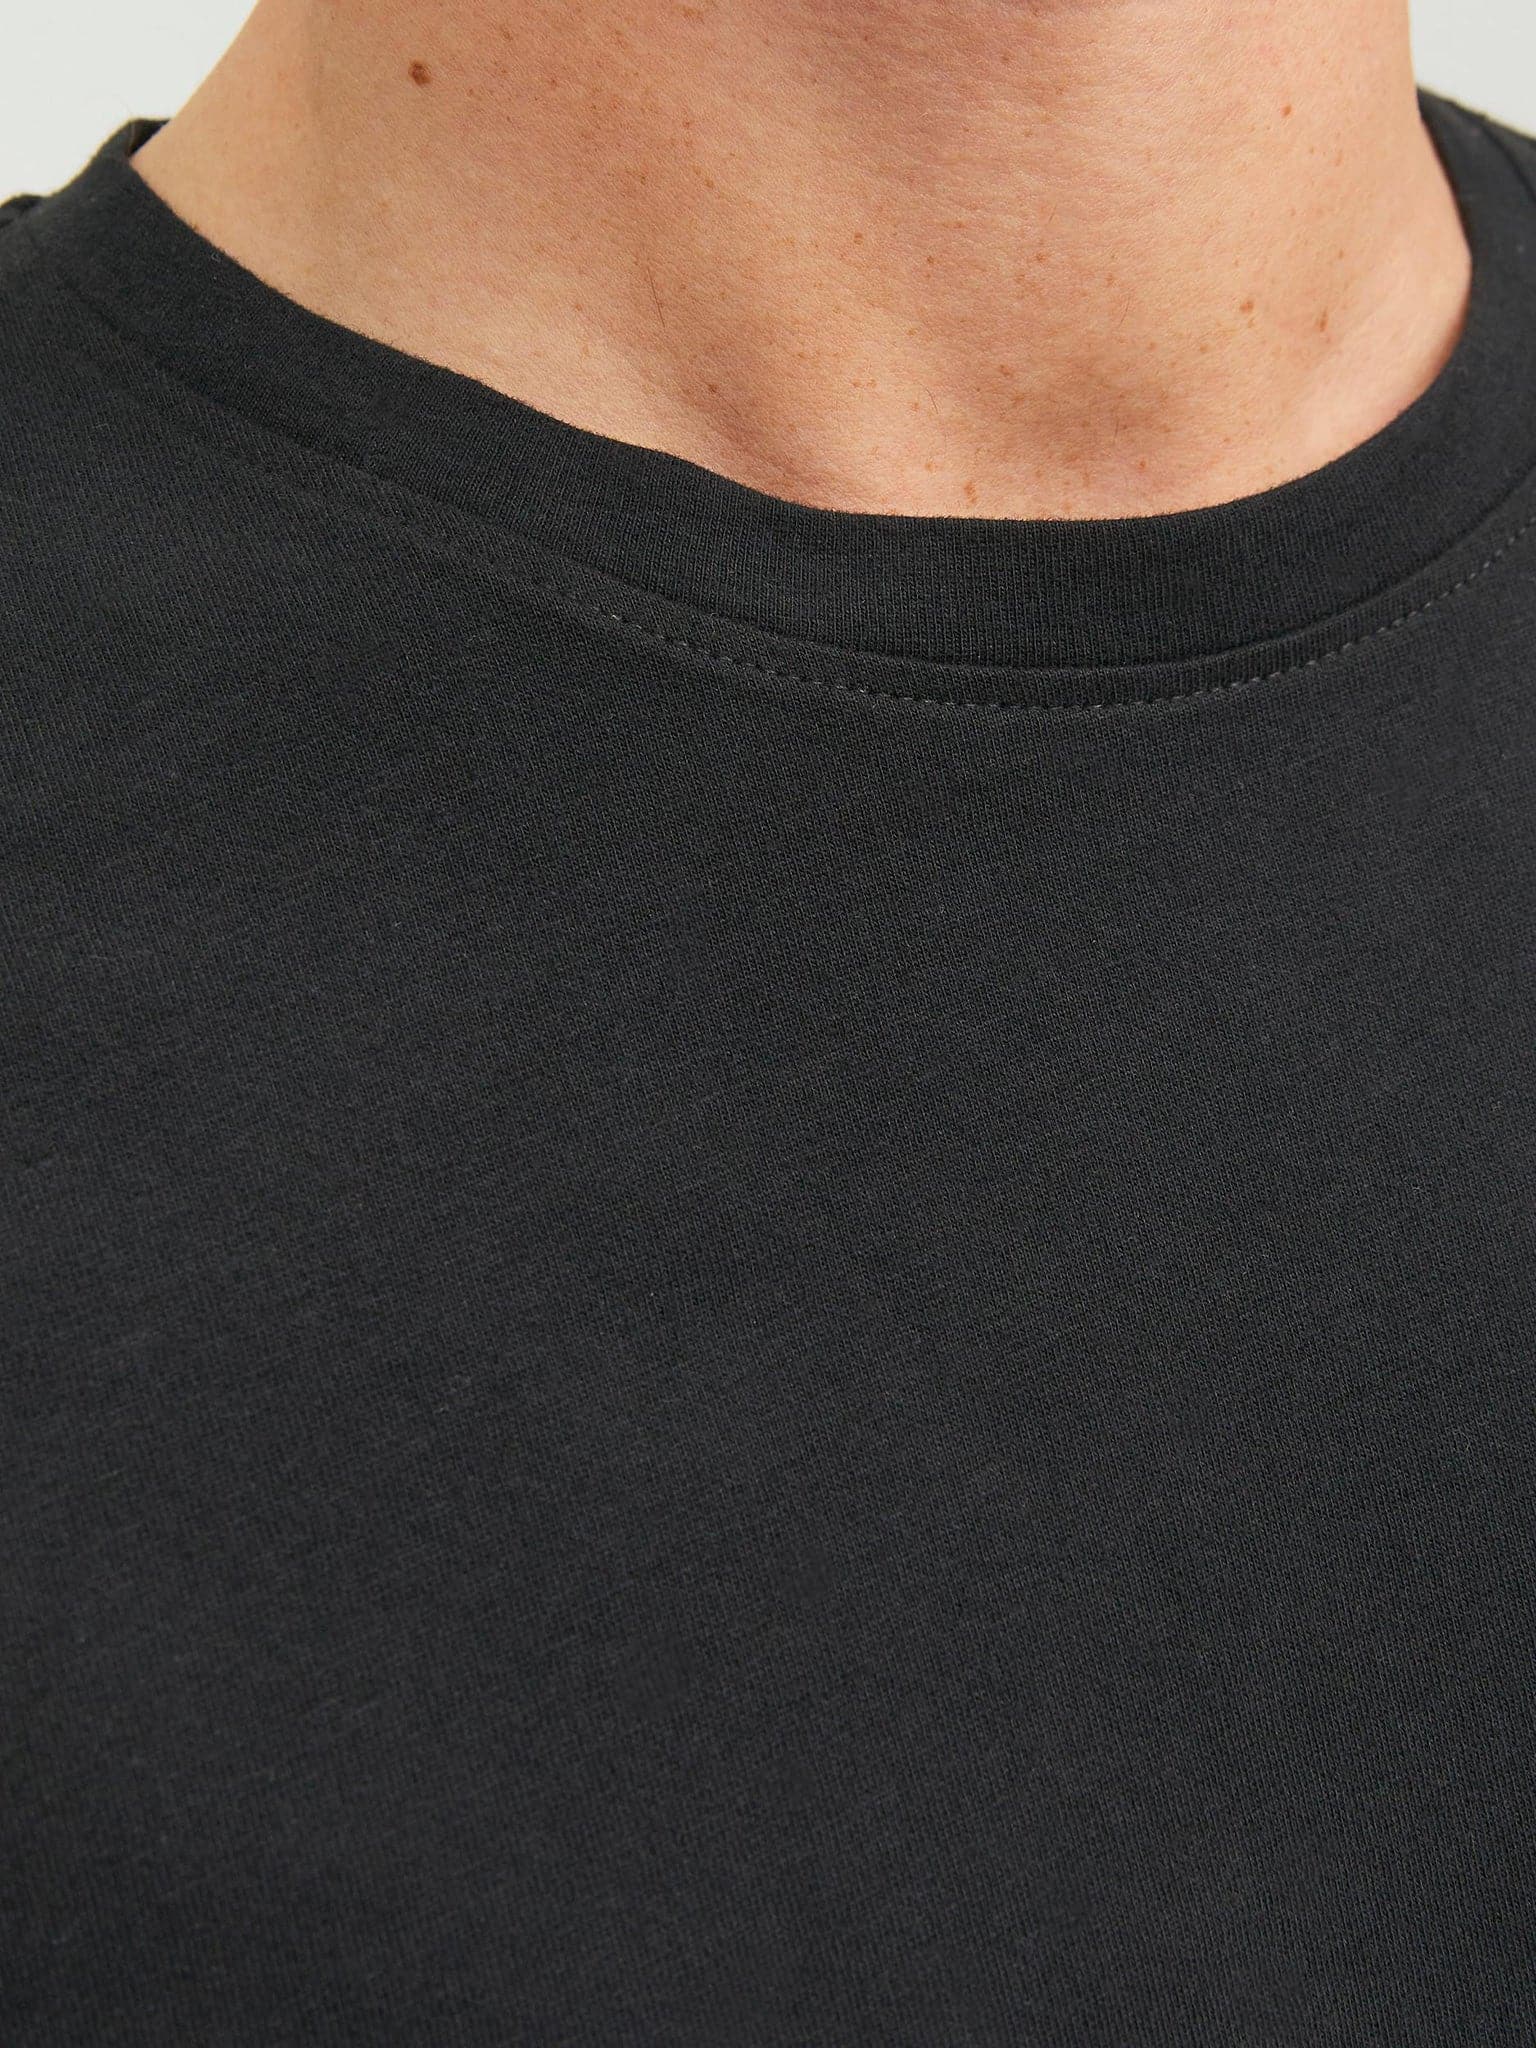 Ανδρική μπλούζα μακό JJENOA TEE O-NECK LS NOOS 12190128 | 12190128